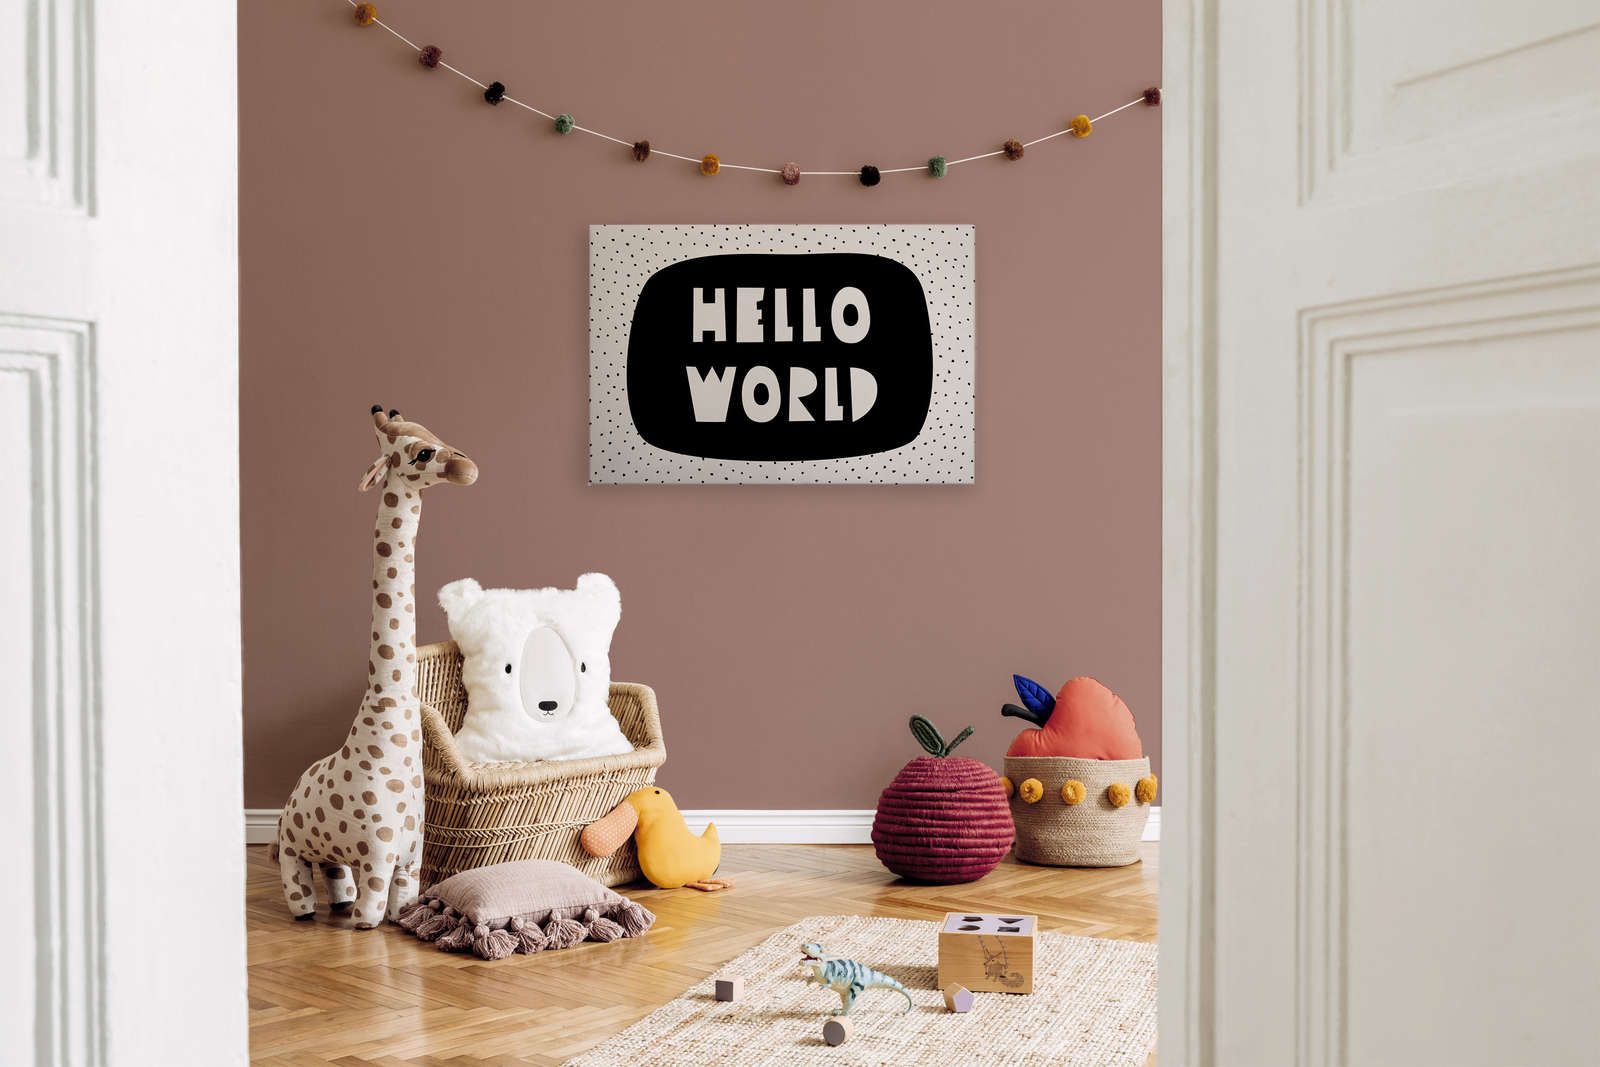             Toile pour chambre d'enfant avec inscription "Hello World" - 90 cm x 60 cm
        